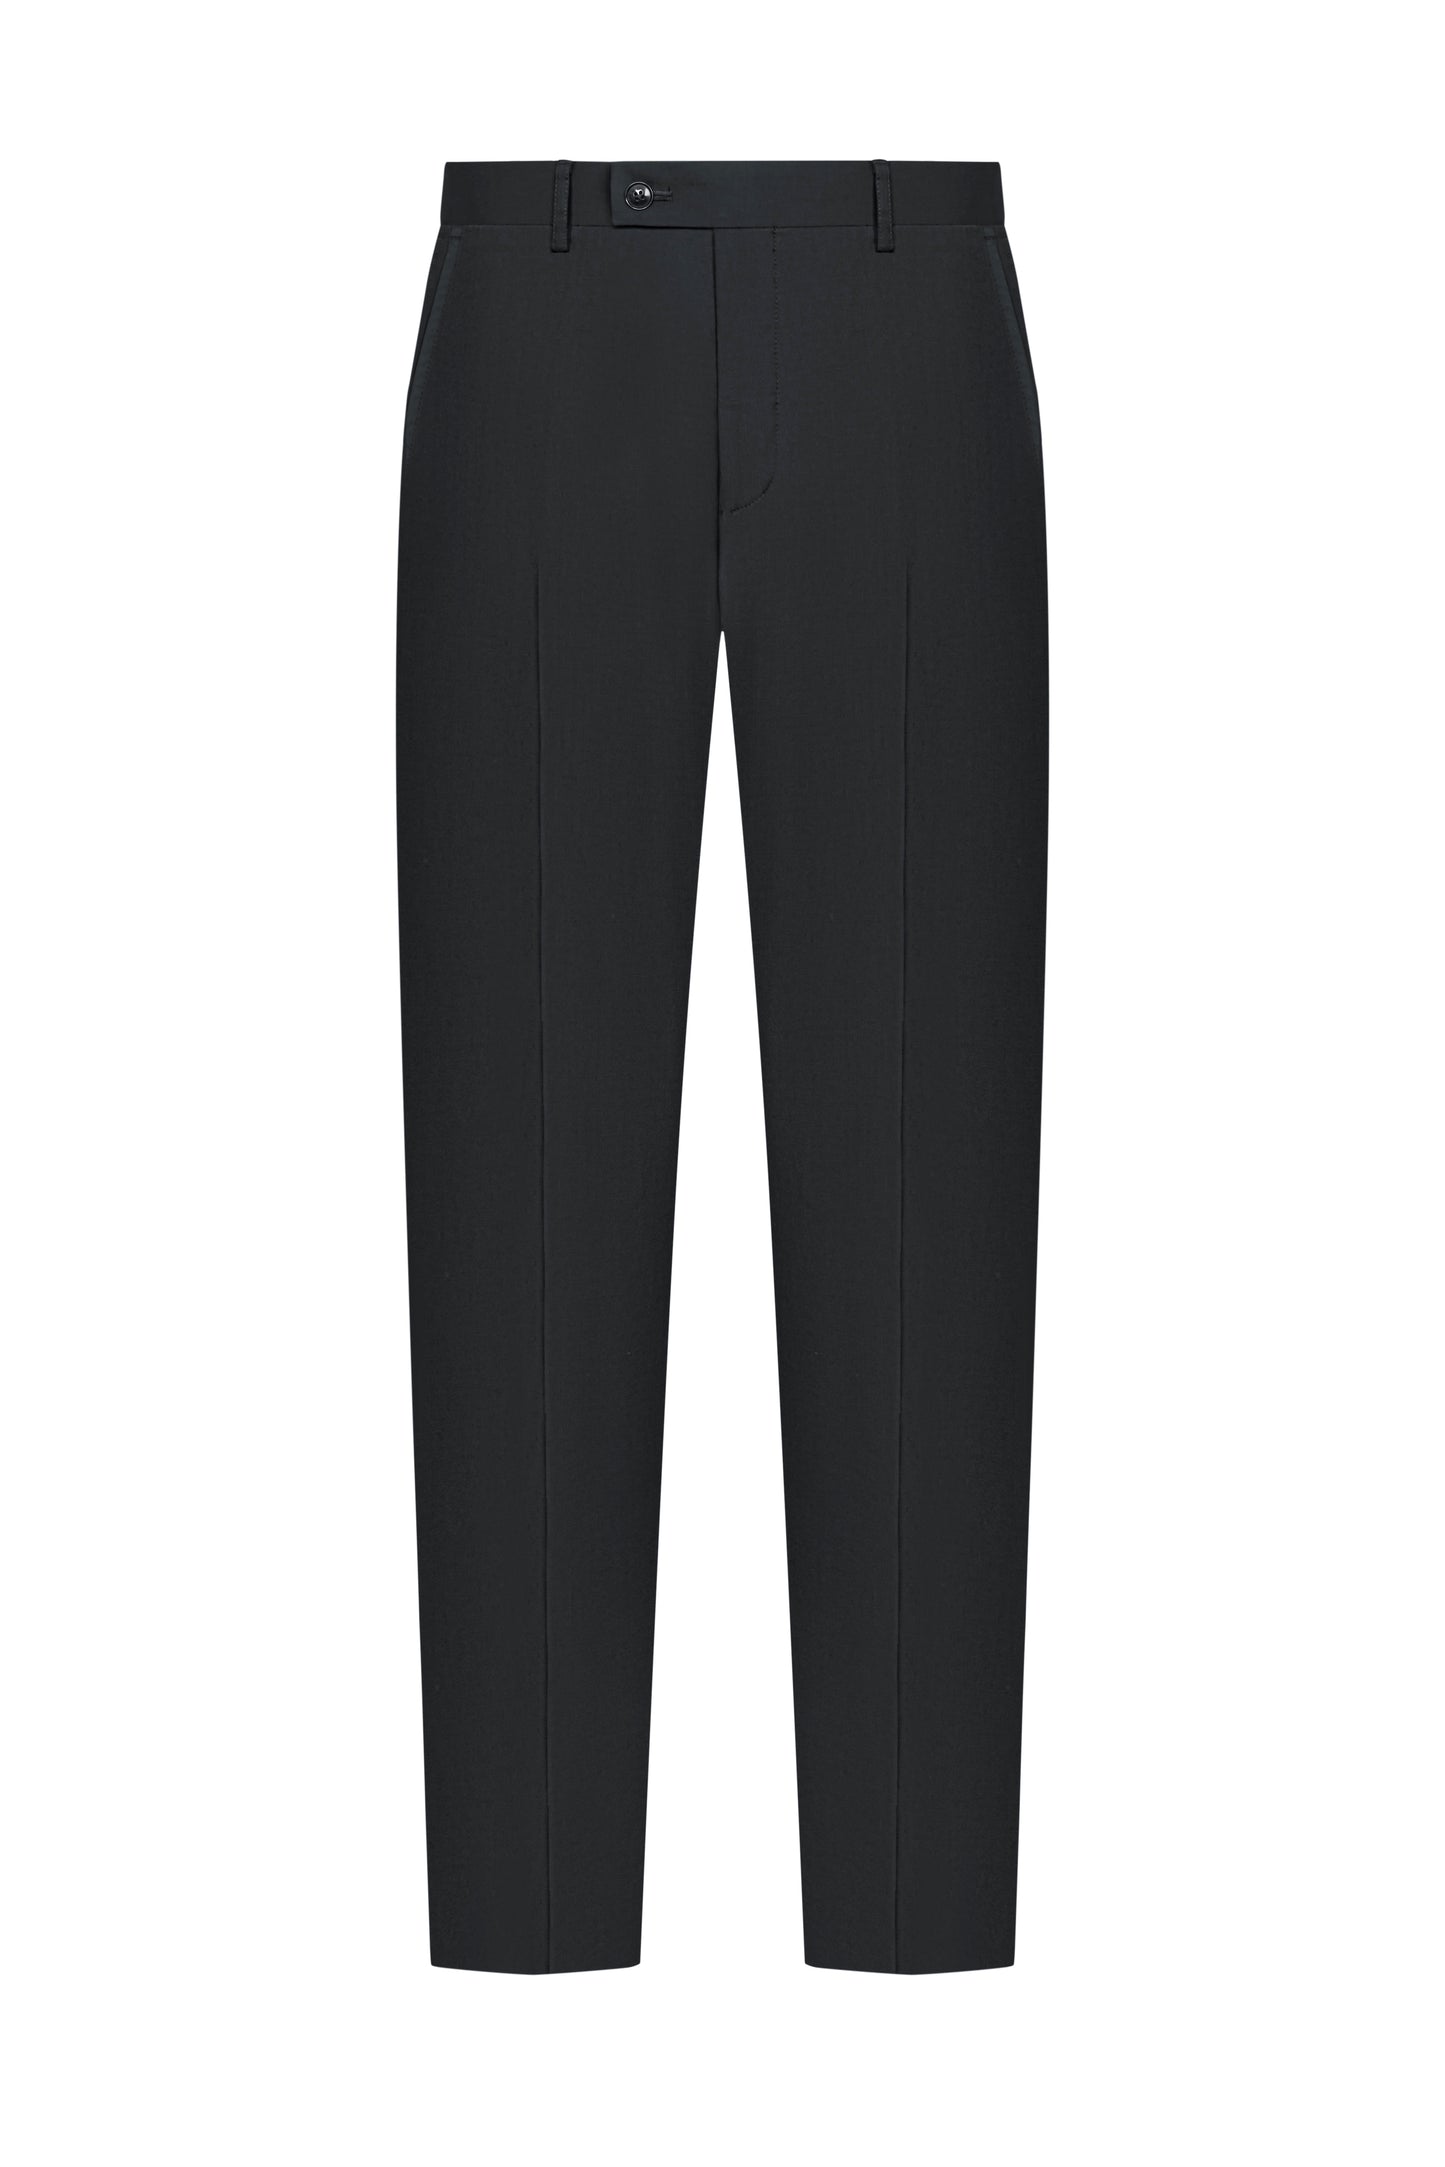 Carbon Grey Twill Custom Trouser